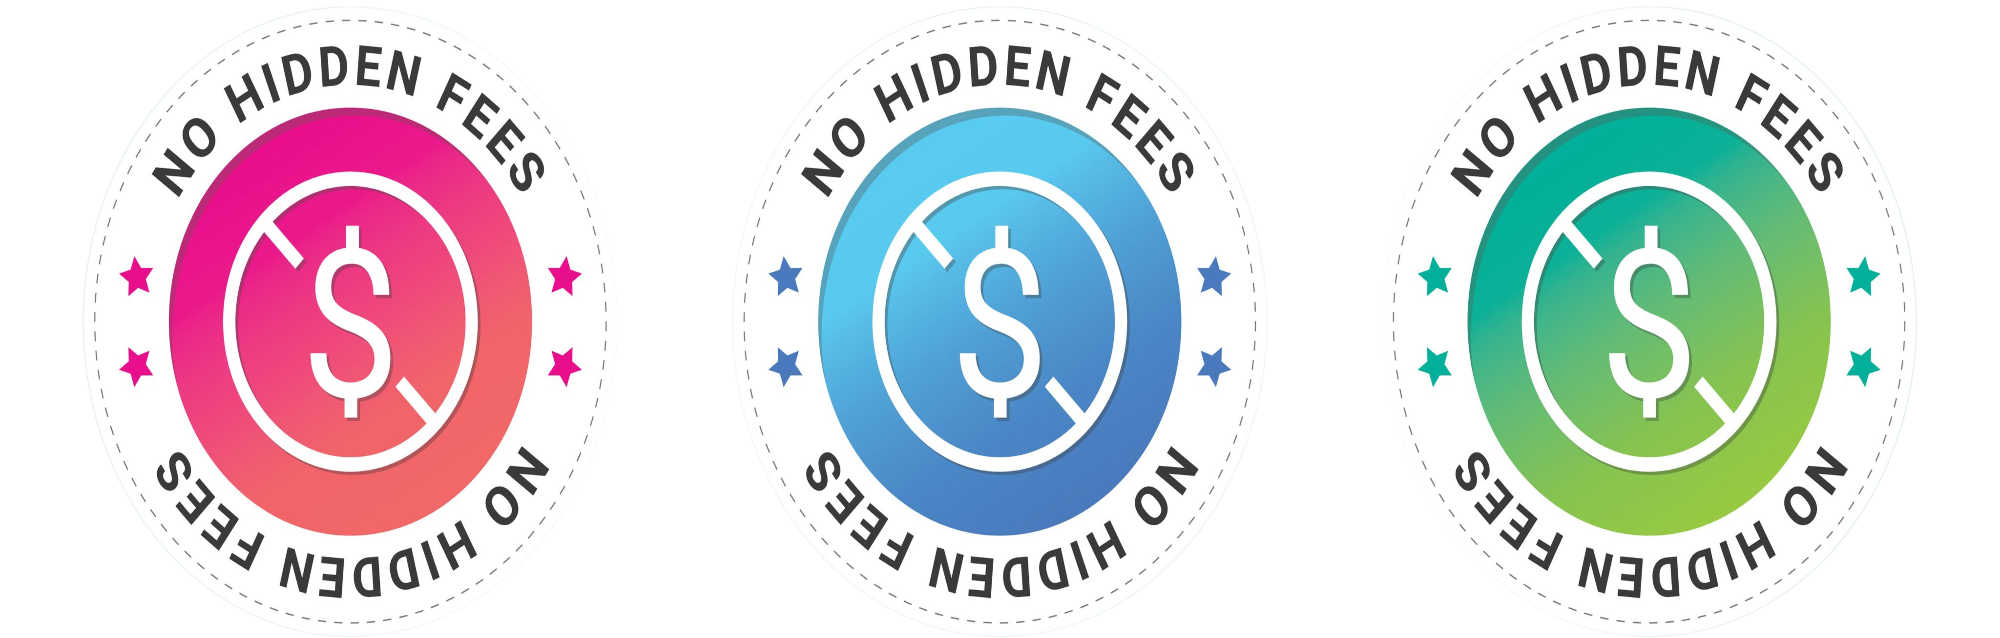 image of e merchant pro has no hidden fees